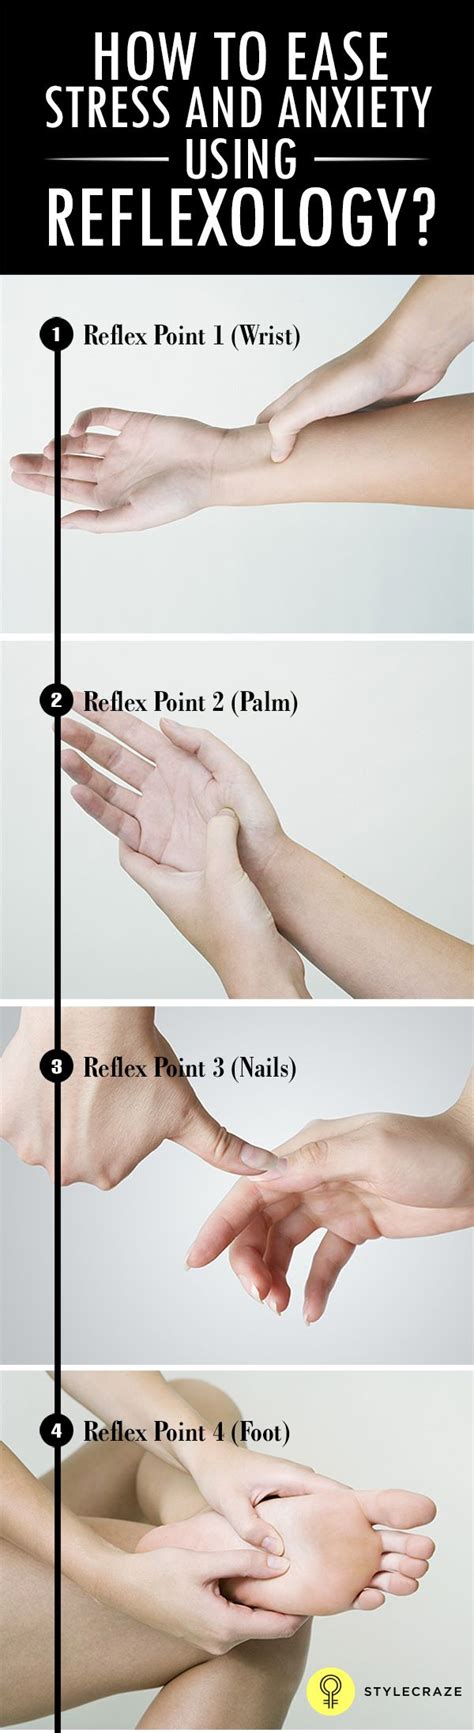 17 Best Images About Hand Reflexology Chart On Pinterest Hand Massage Health And Reflexology